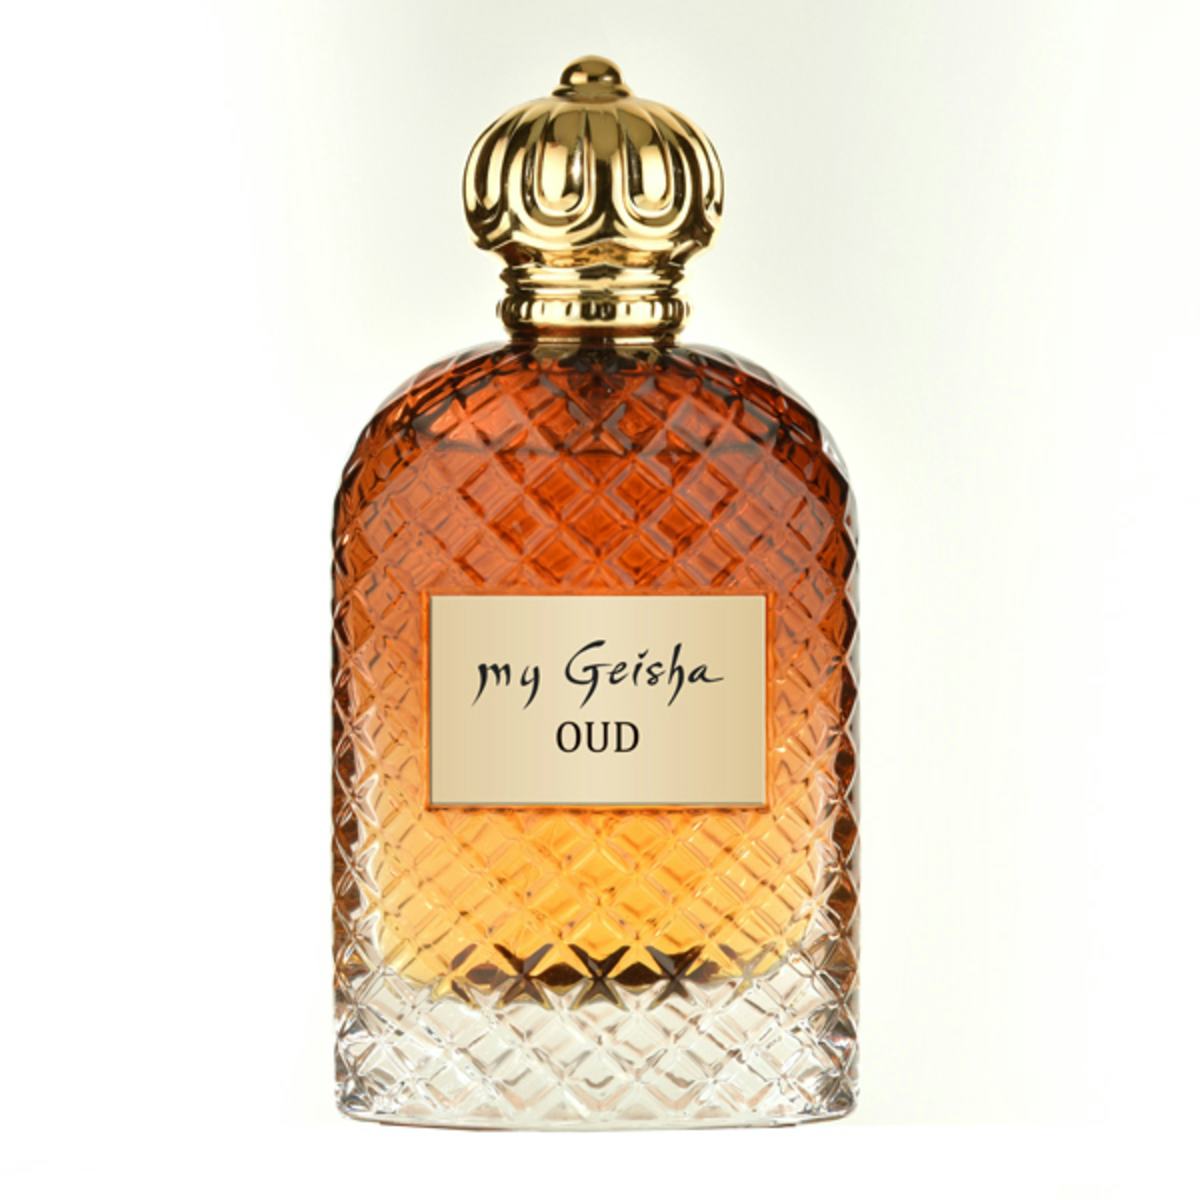 Extrait de parfum OUD 100 ml, handwerkliches Produkt für den Direktverkauf in der Schweiz